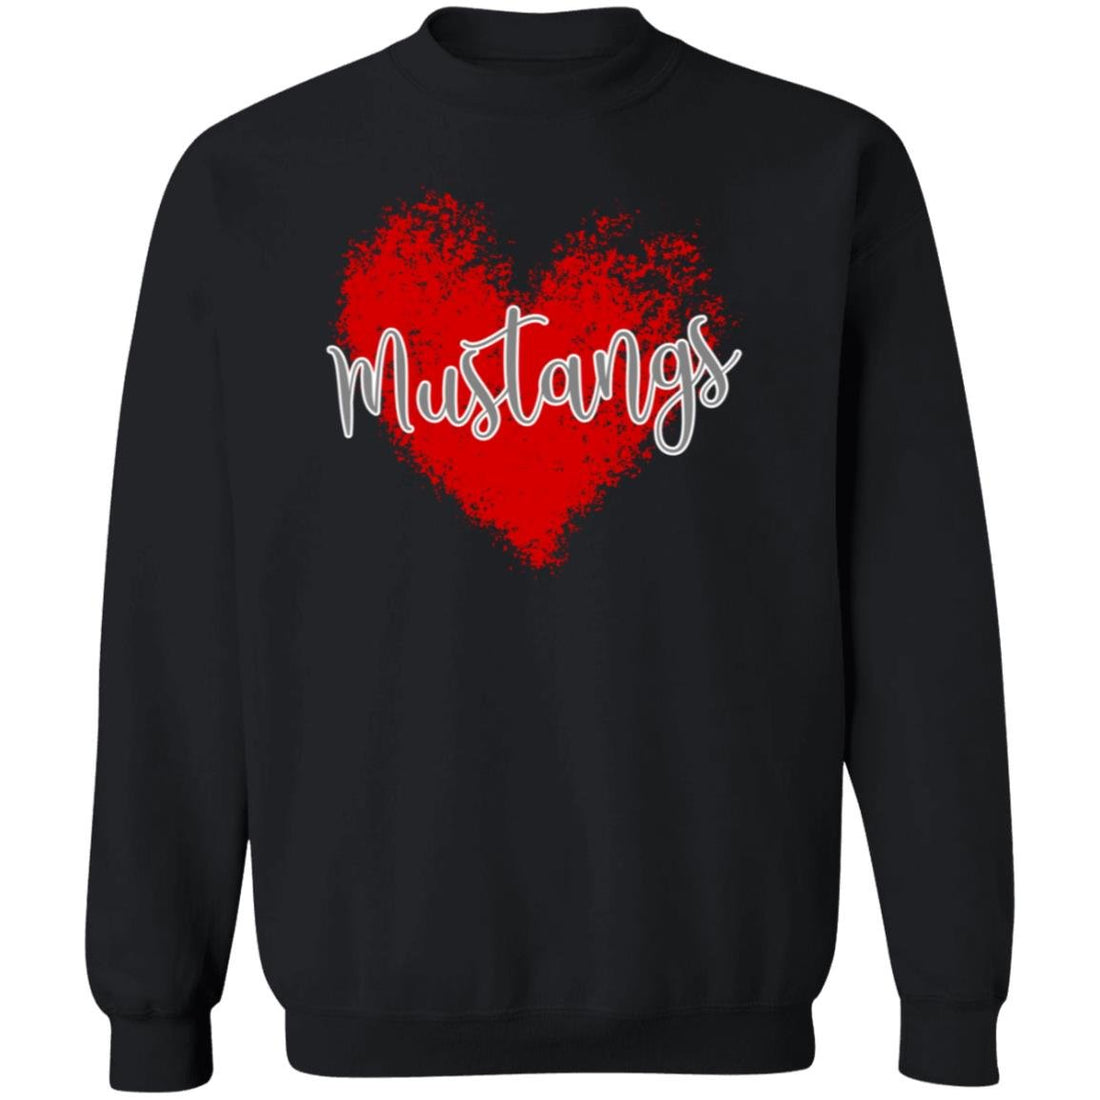 Mustang Love Crewneck Pullover Sweatshirt - Sweatshirts - Positively Sassy - Mustang Love Crewneck Pullover Sweatshirt